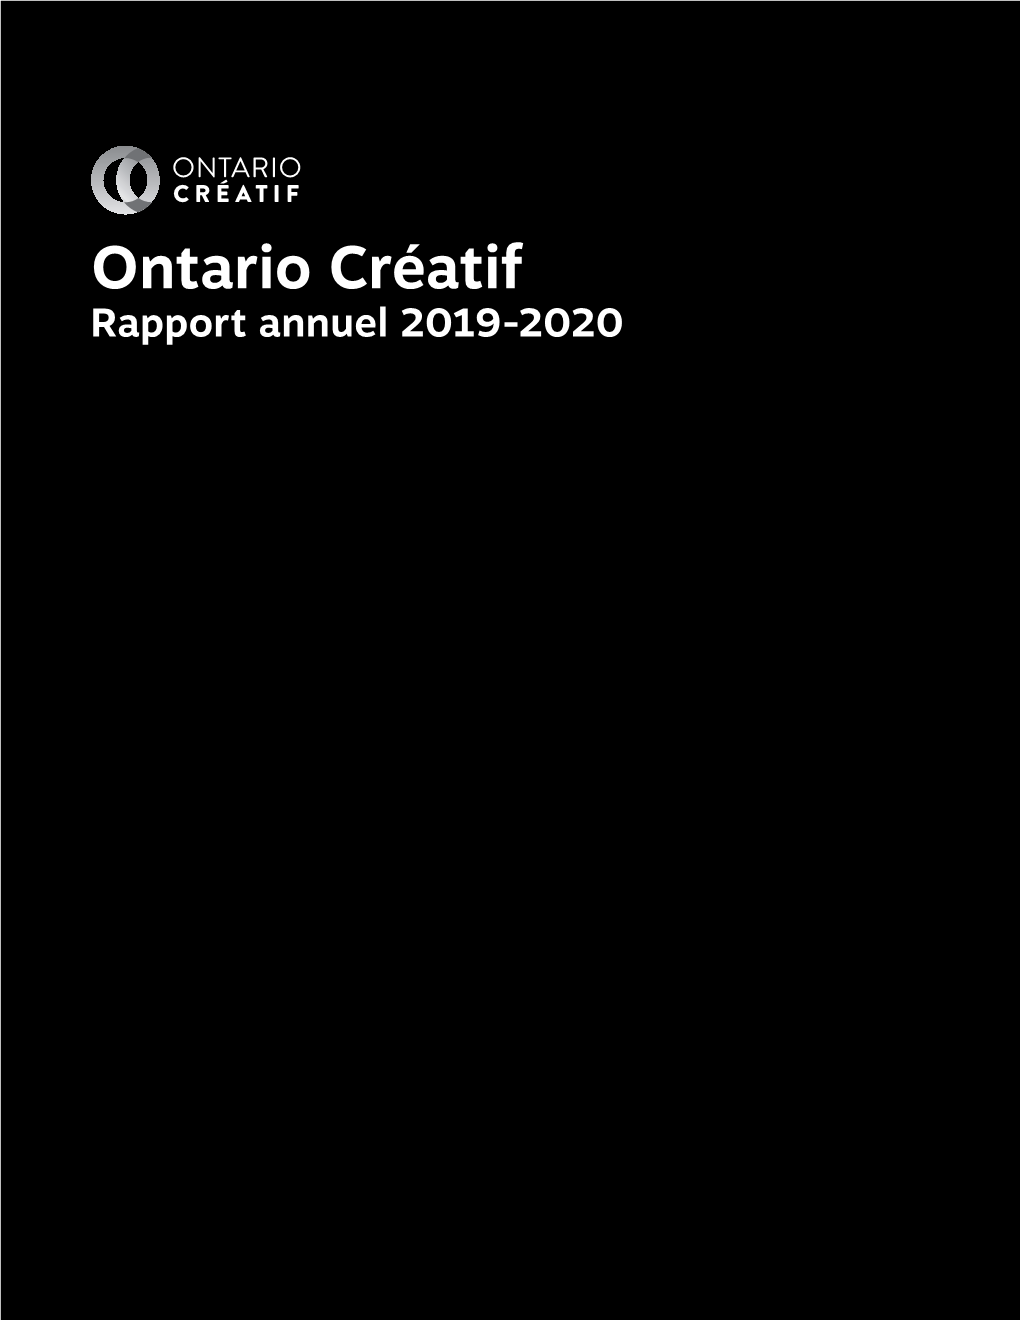 Ontario Créatif Rapport Annuel 2019-2020